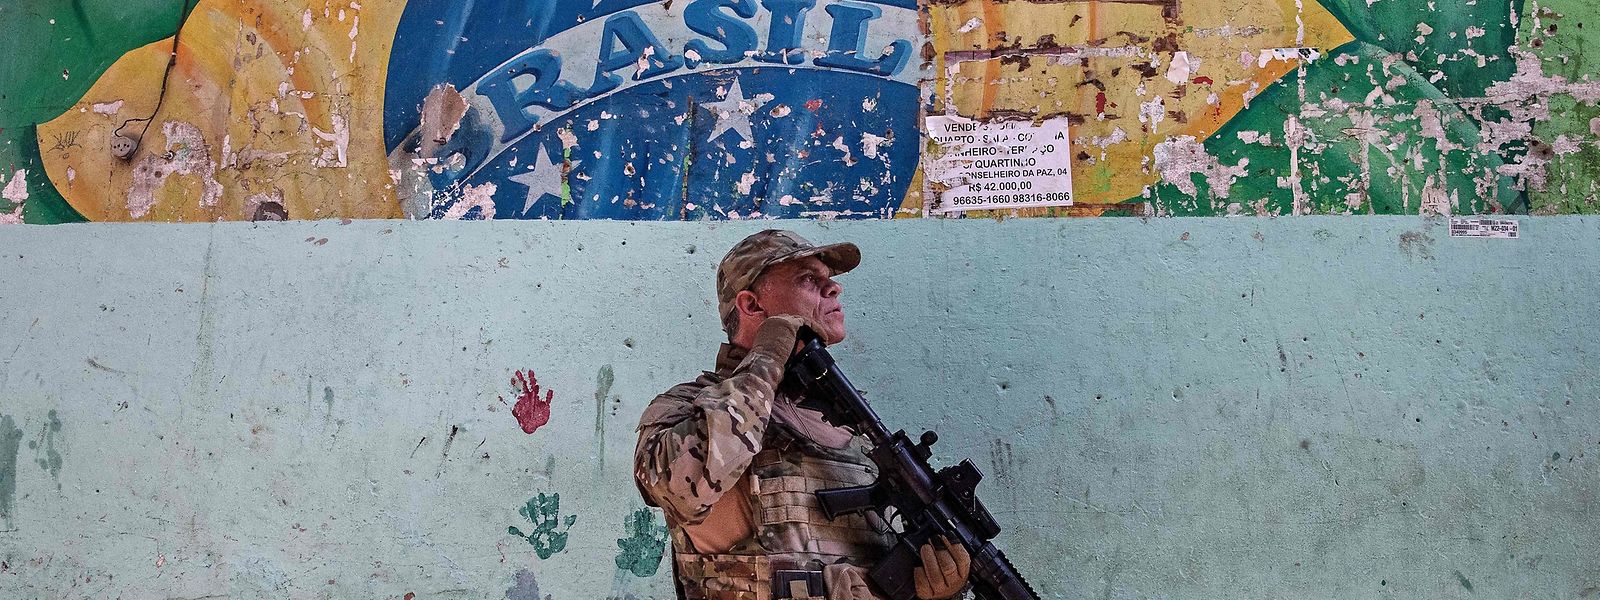 Operação foi lançada para capturar traficantes de droga que tinham fugido da favela de Jacarezinho noutra operação no mês passado.